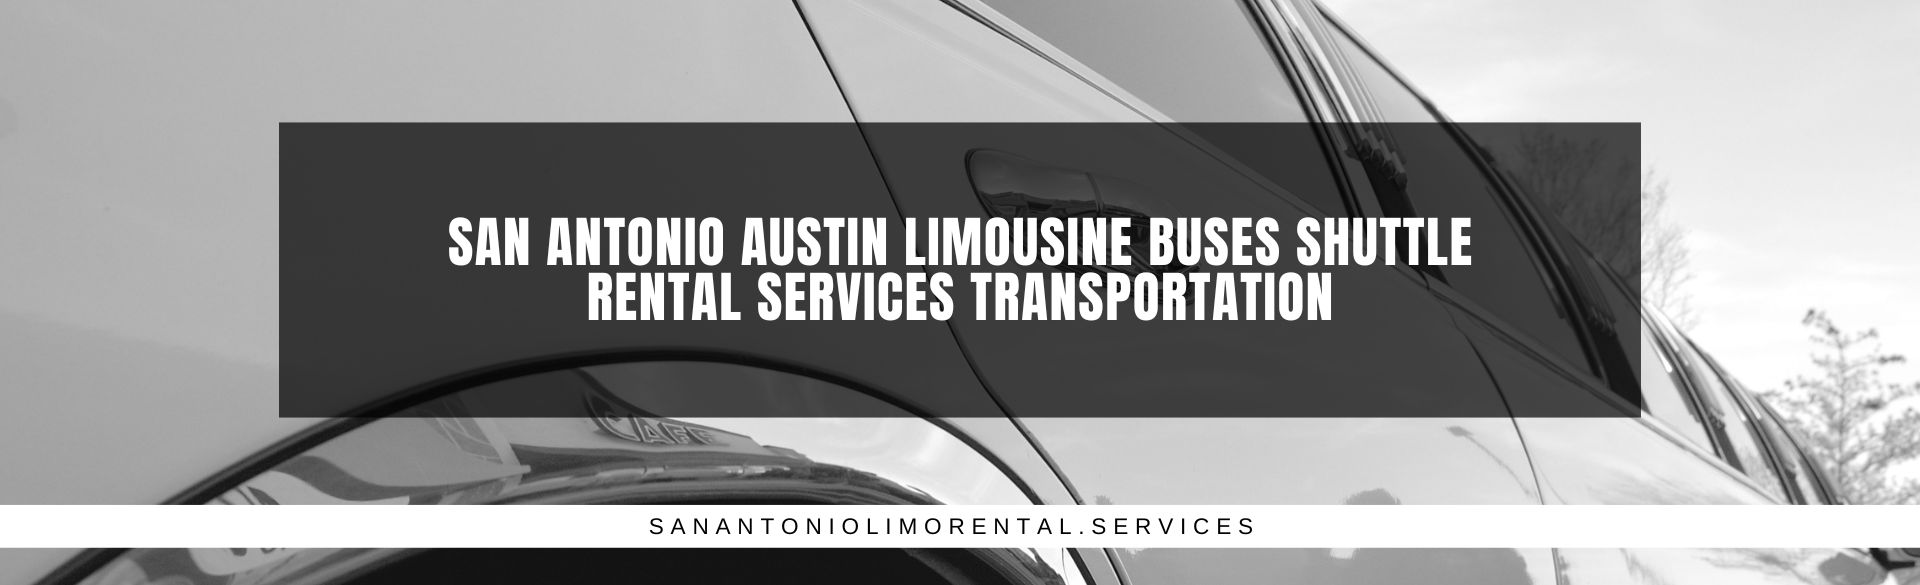 San Antonio Austin Limousine Buses Shuttle Rental Services Transportation